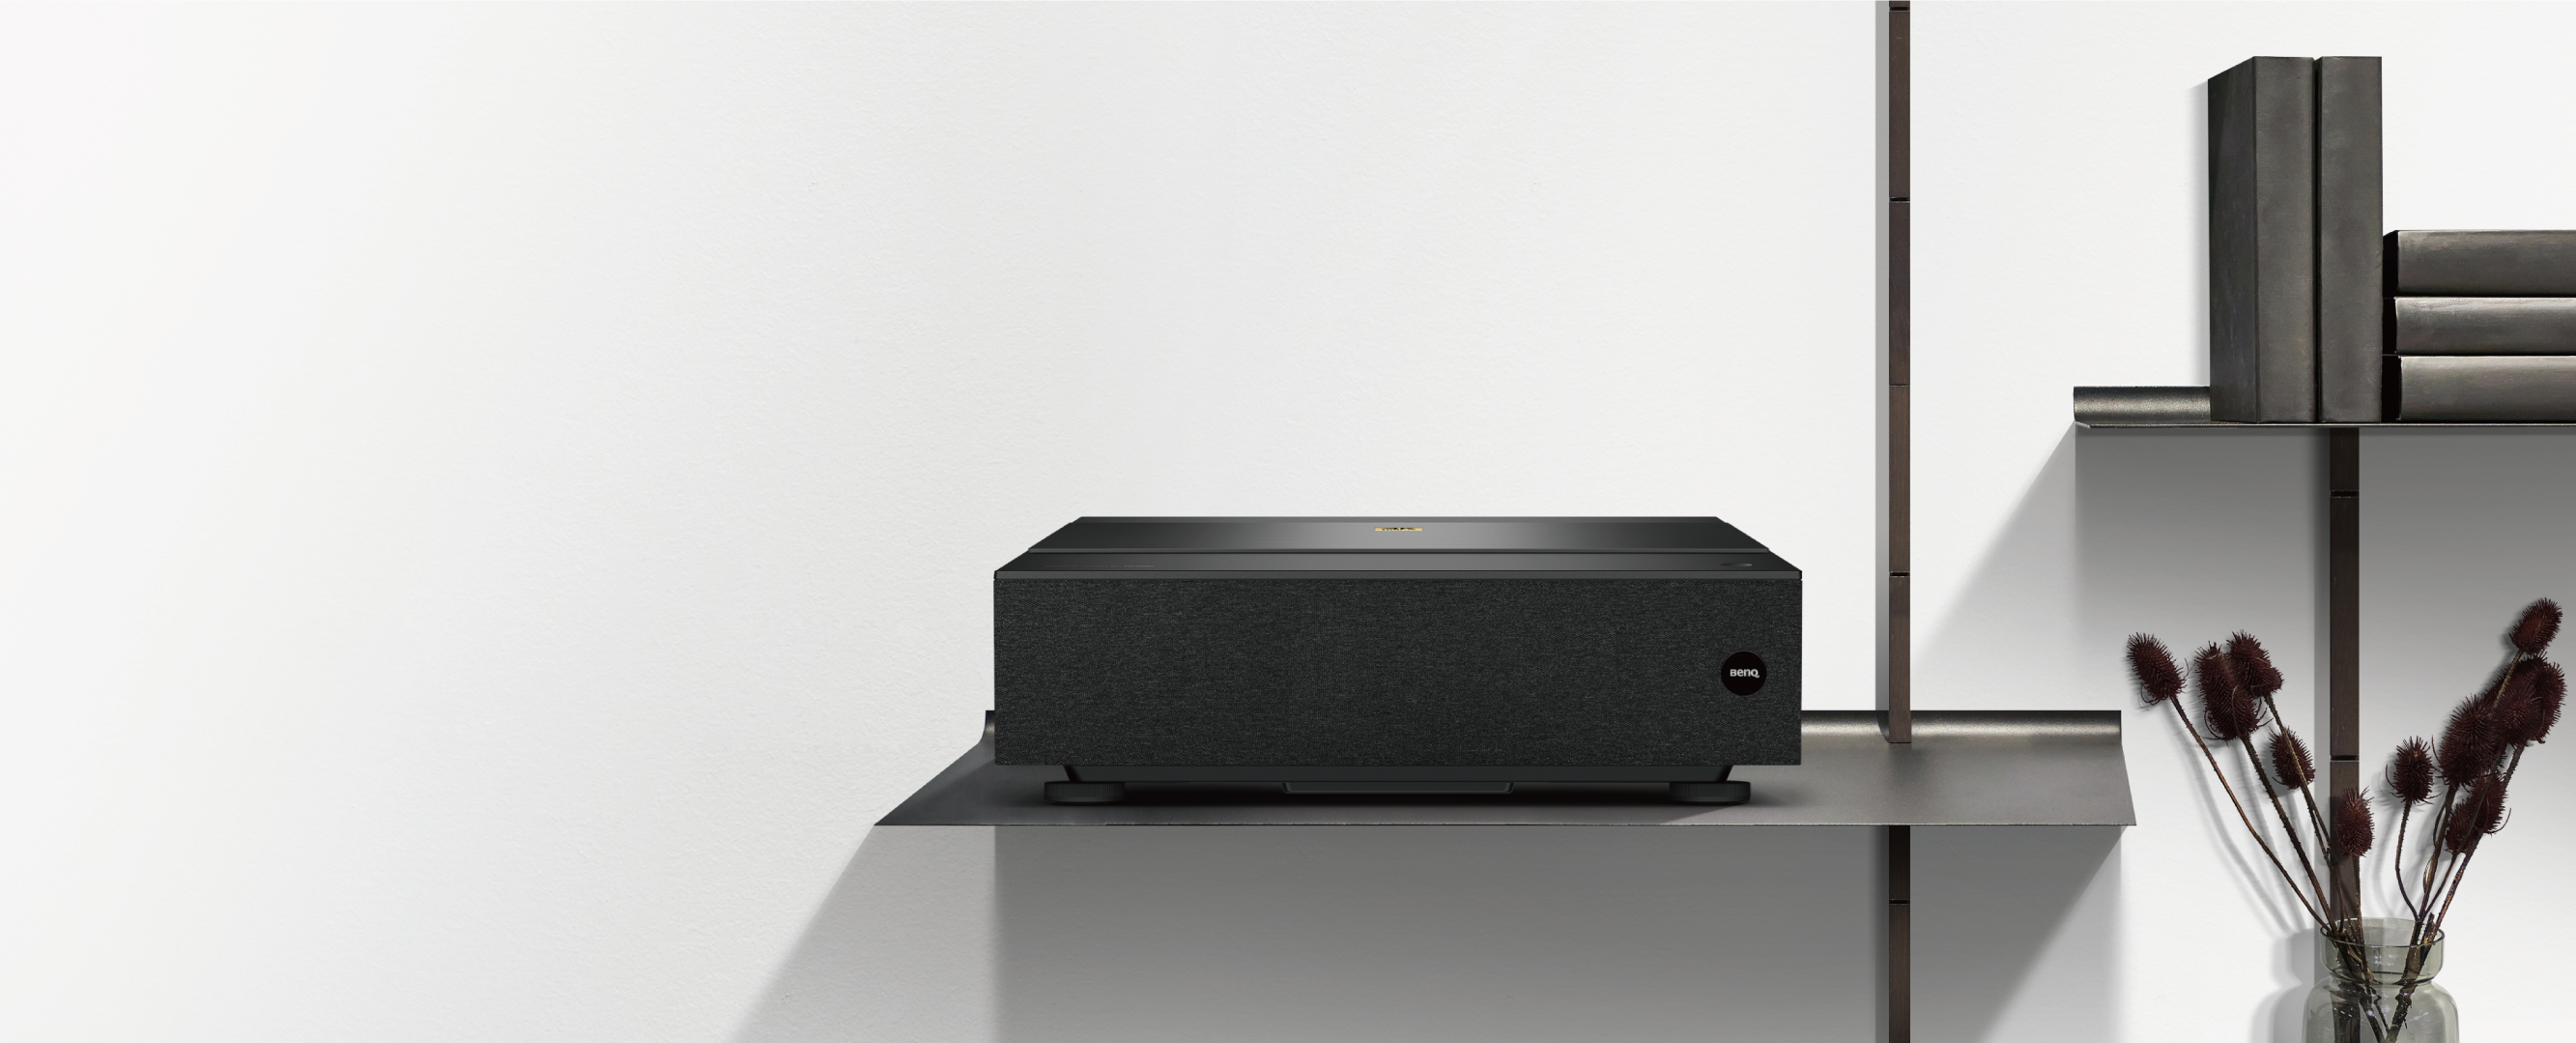 BenQ ProiectorProiector inteligent home cinema Laser 4K cu distanţă ultra-scurtă de proiecţie cu 98% din gama DCI-P3, HDR-PRO, Android TV | V7050i negru 